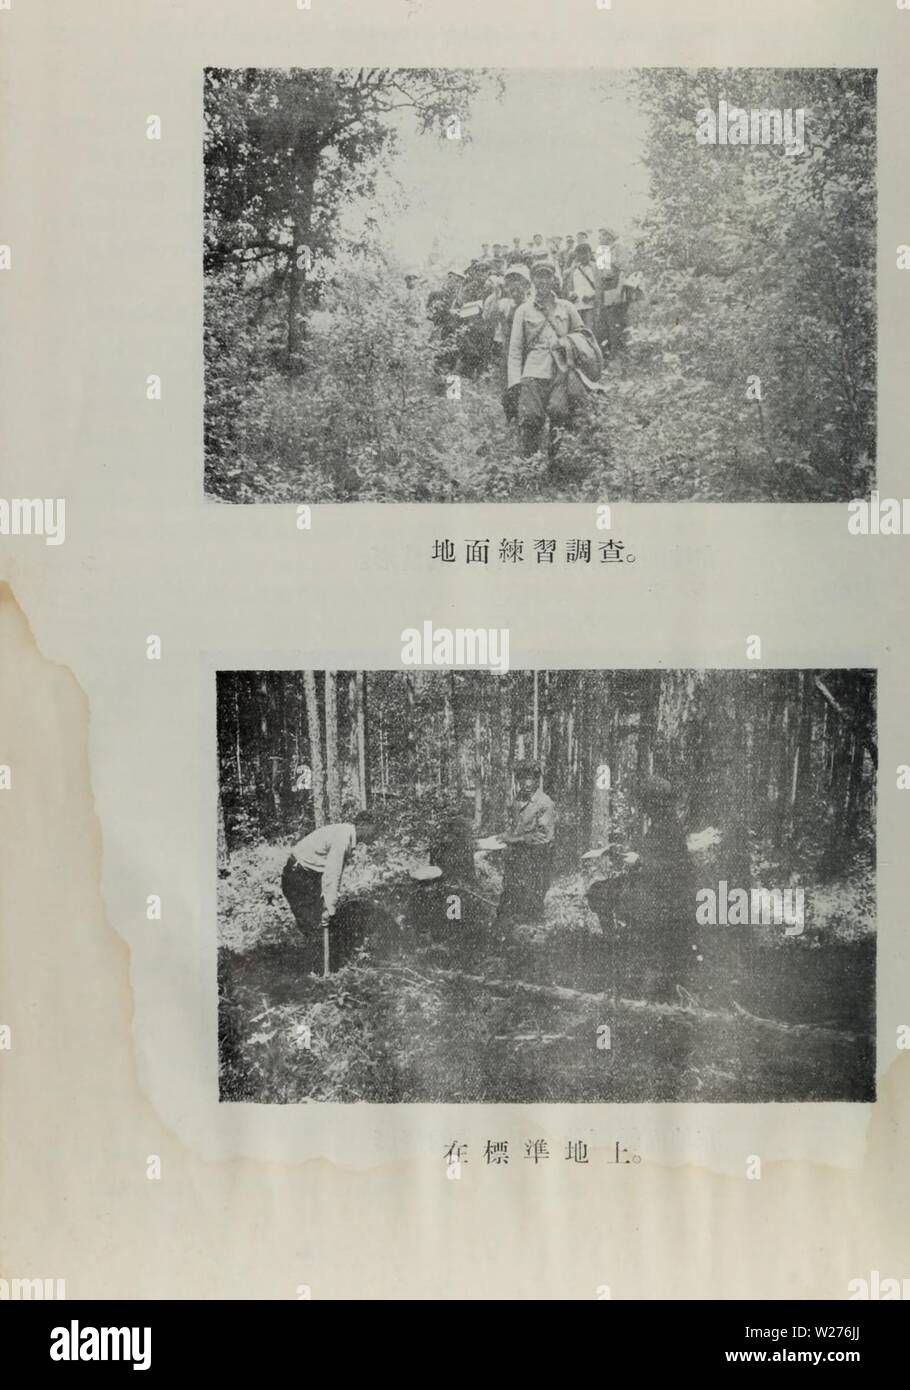 Image d'archive à partir de la page 43 de da xing ling un sen. da xing ling un sen lin zi yuan diao cha bao gao daxinglingsenlin01tezh Année : 1954 Banque D'Images